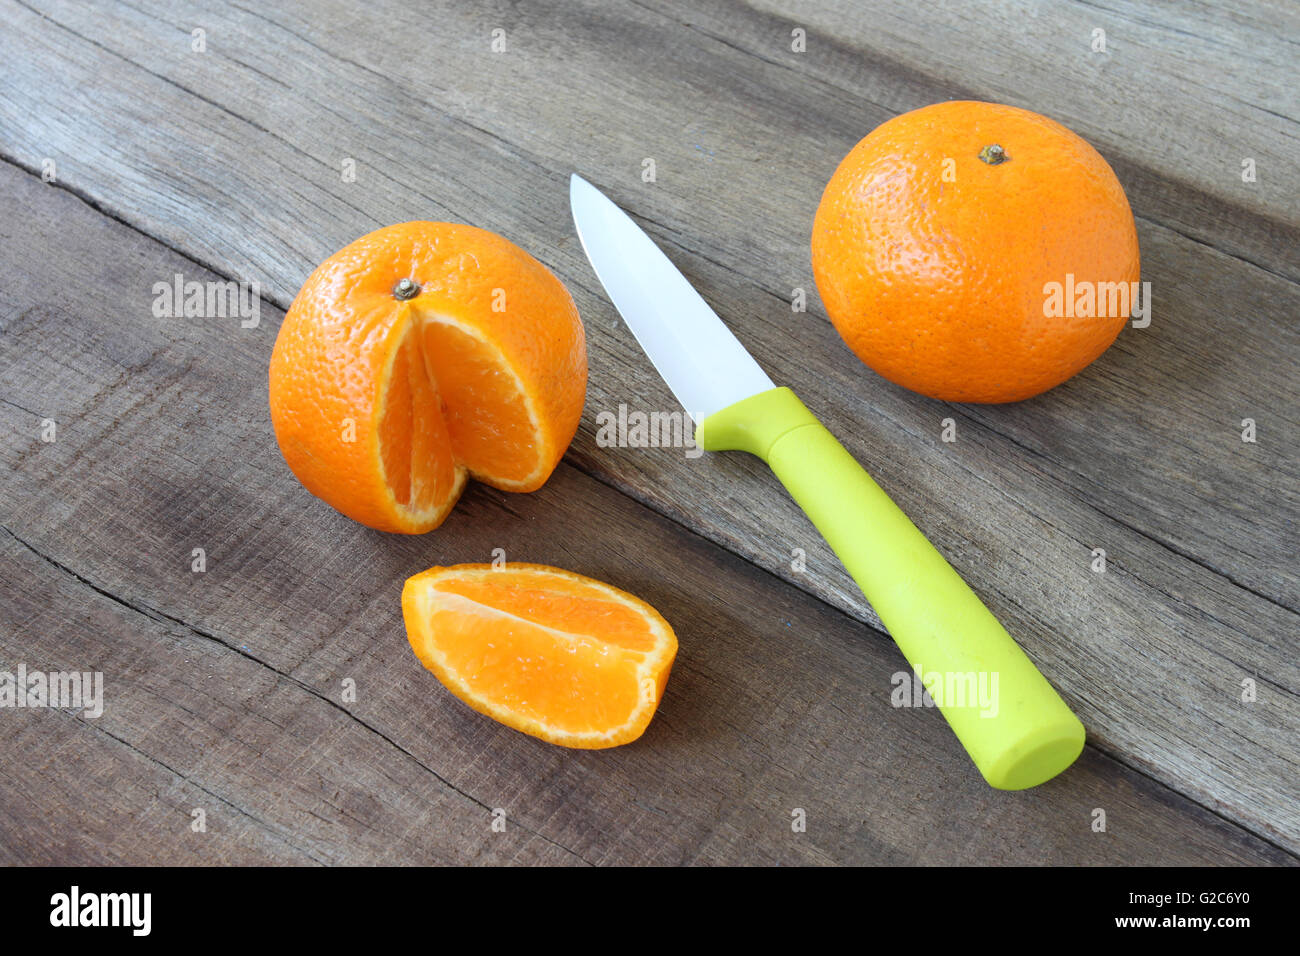 frische orange Frucht auf Holzboden gelegt und haben Messer Acryl-Konzept für eine gesunde Ernährung. Stockfoto